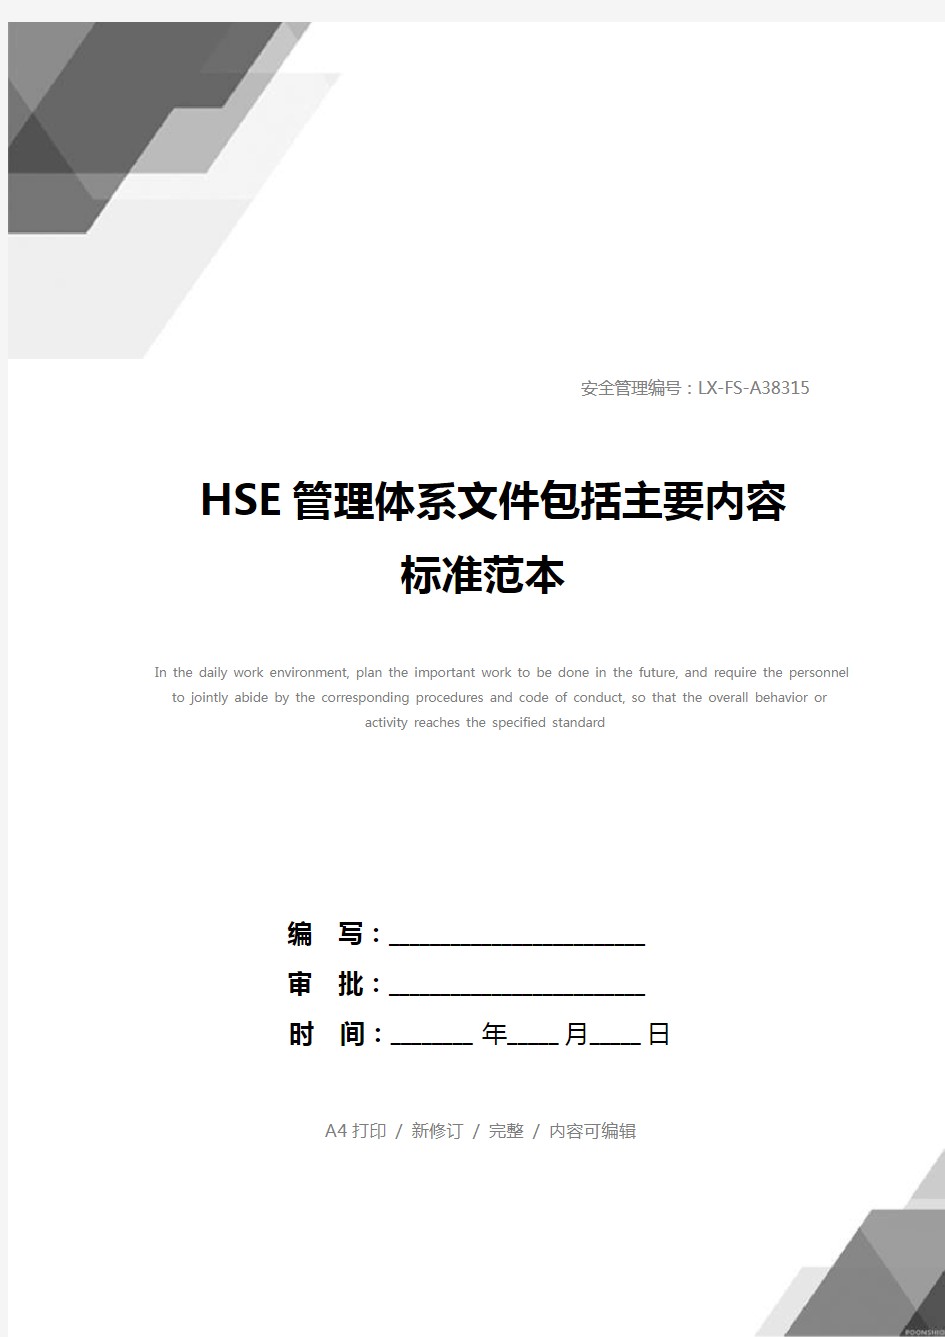 HSE管理体系文件包括主要内容标准范本